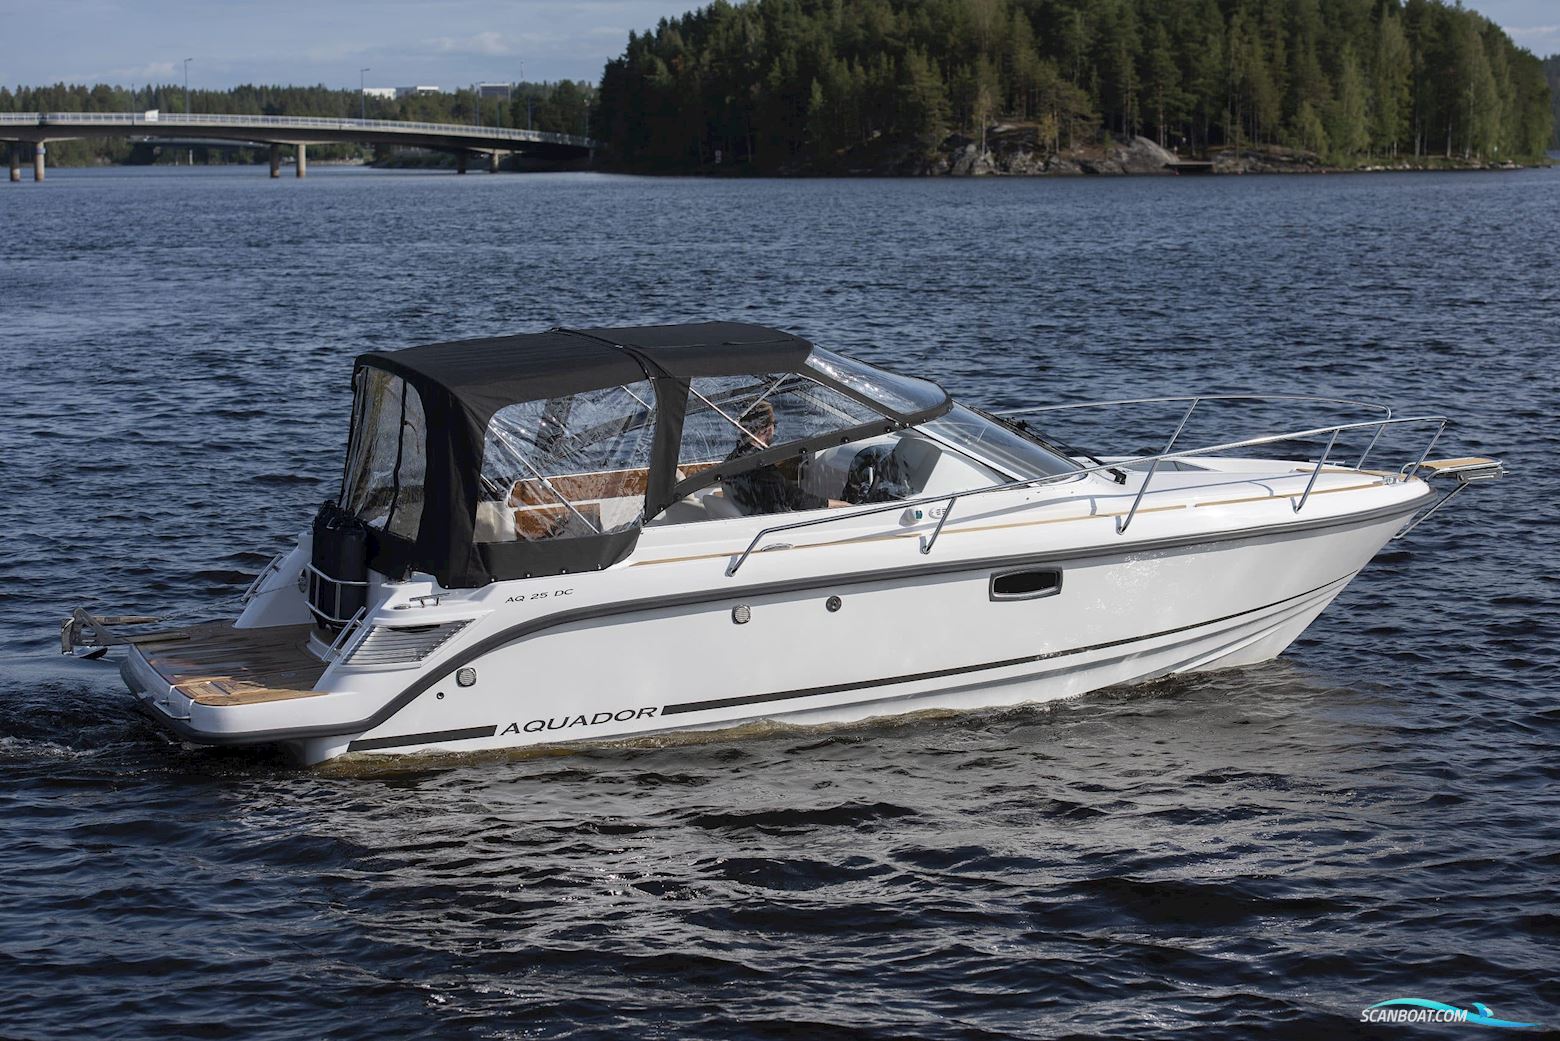 Aquador 25 DC Motor boat 2021, with Mercruiser 250 hk engine, Sweden